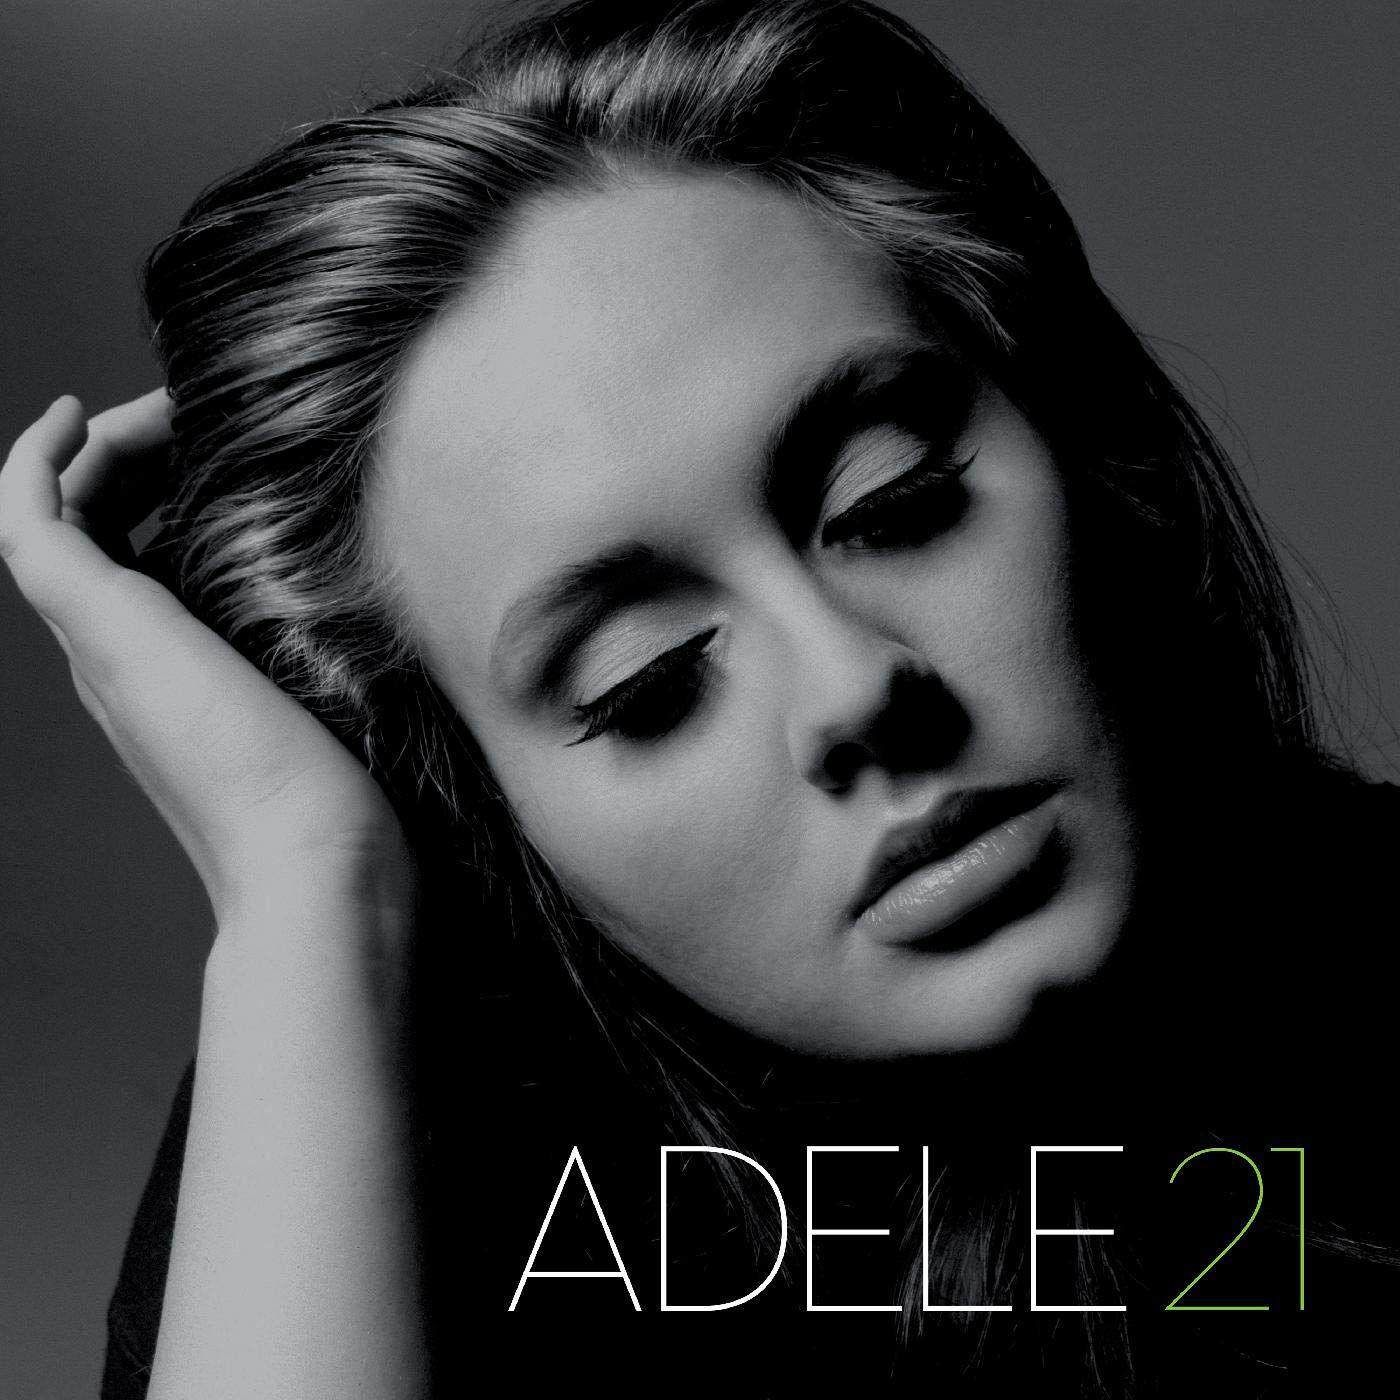 Adele 21 Vinyl Record